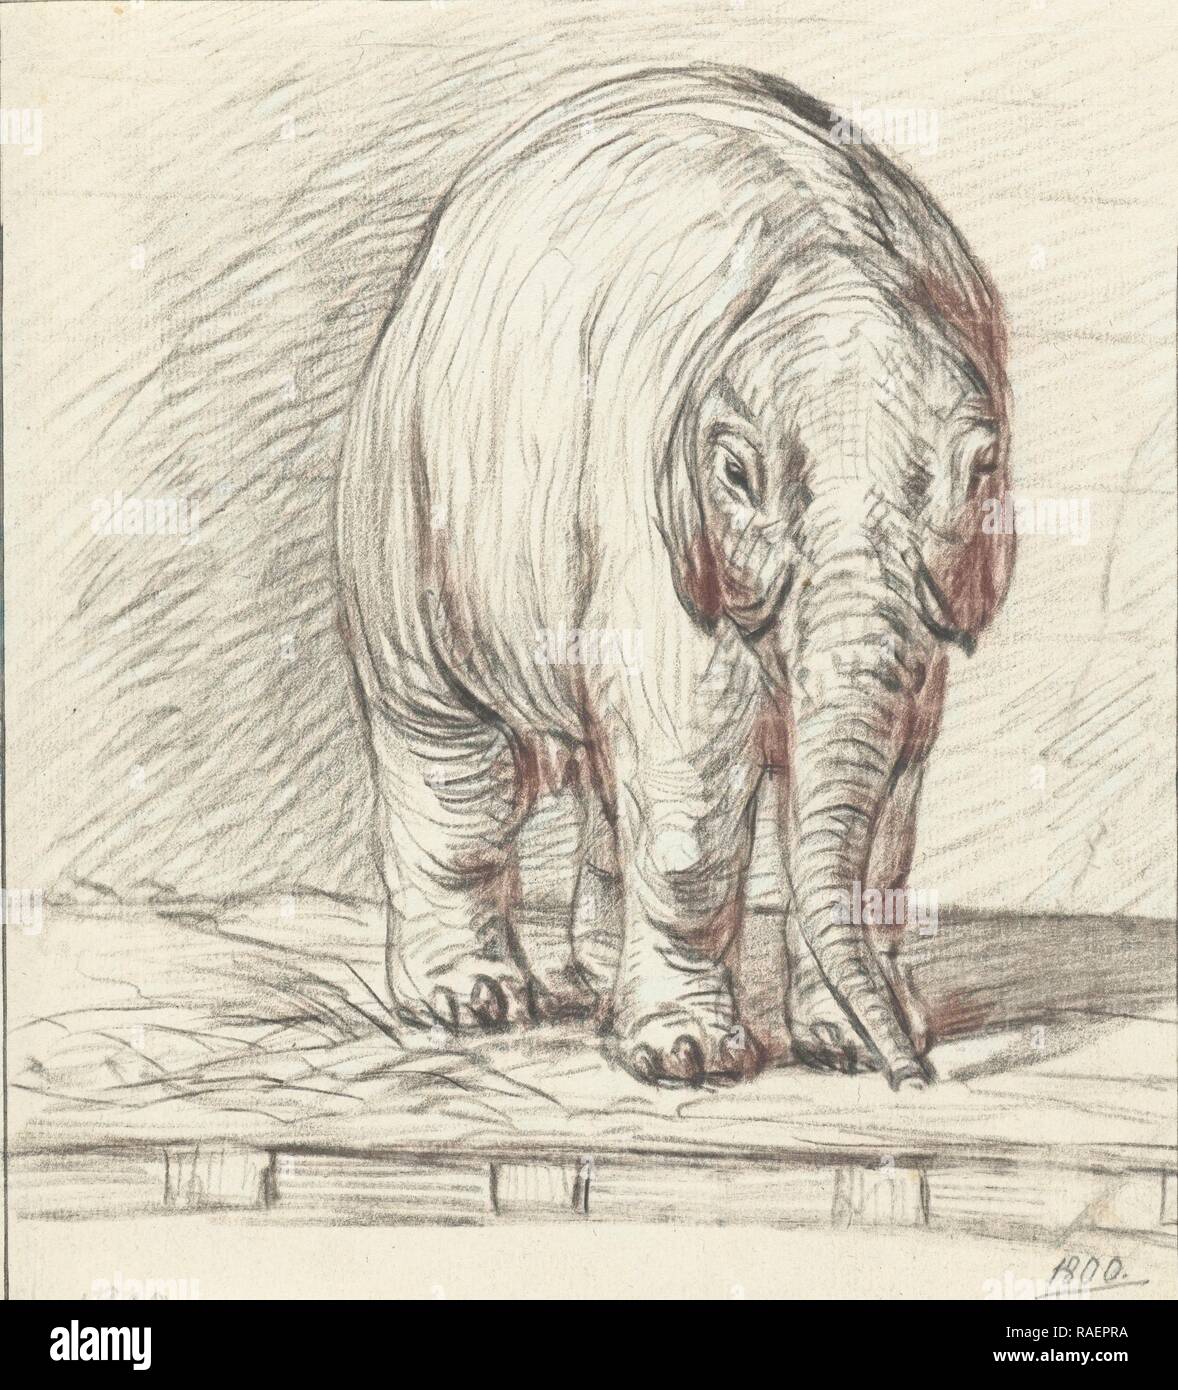 Piedi di elefante, Jean Bernard, 180. Reinventato da Gibon. Arte Classica con un tocco di moderno reinventato Foto Stock